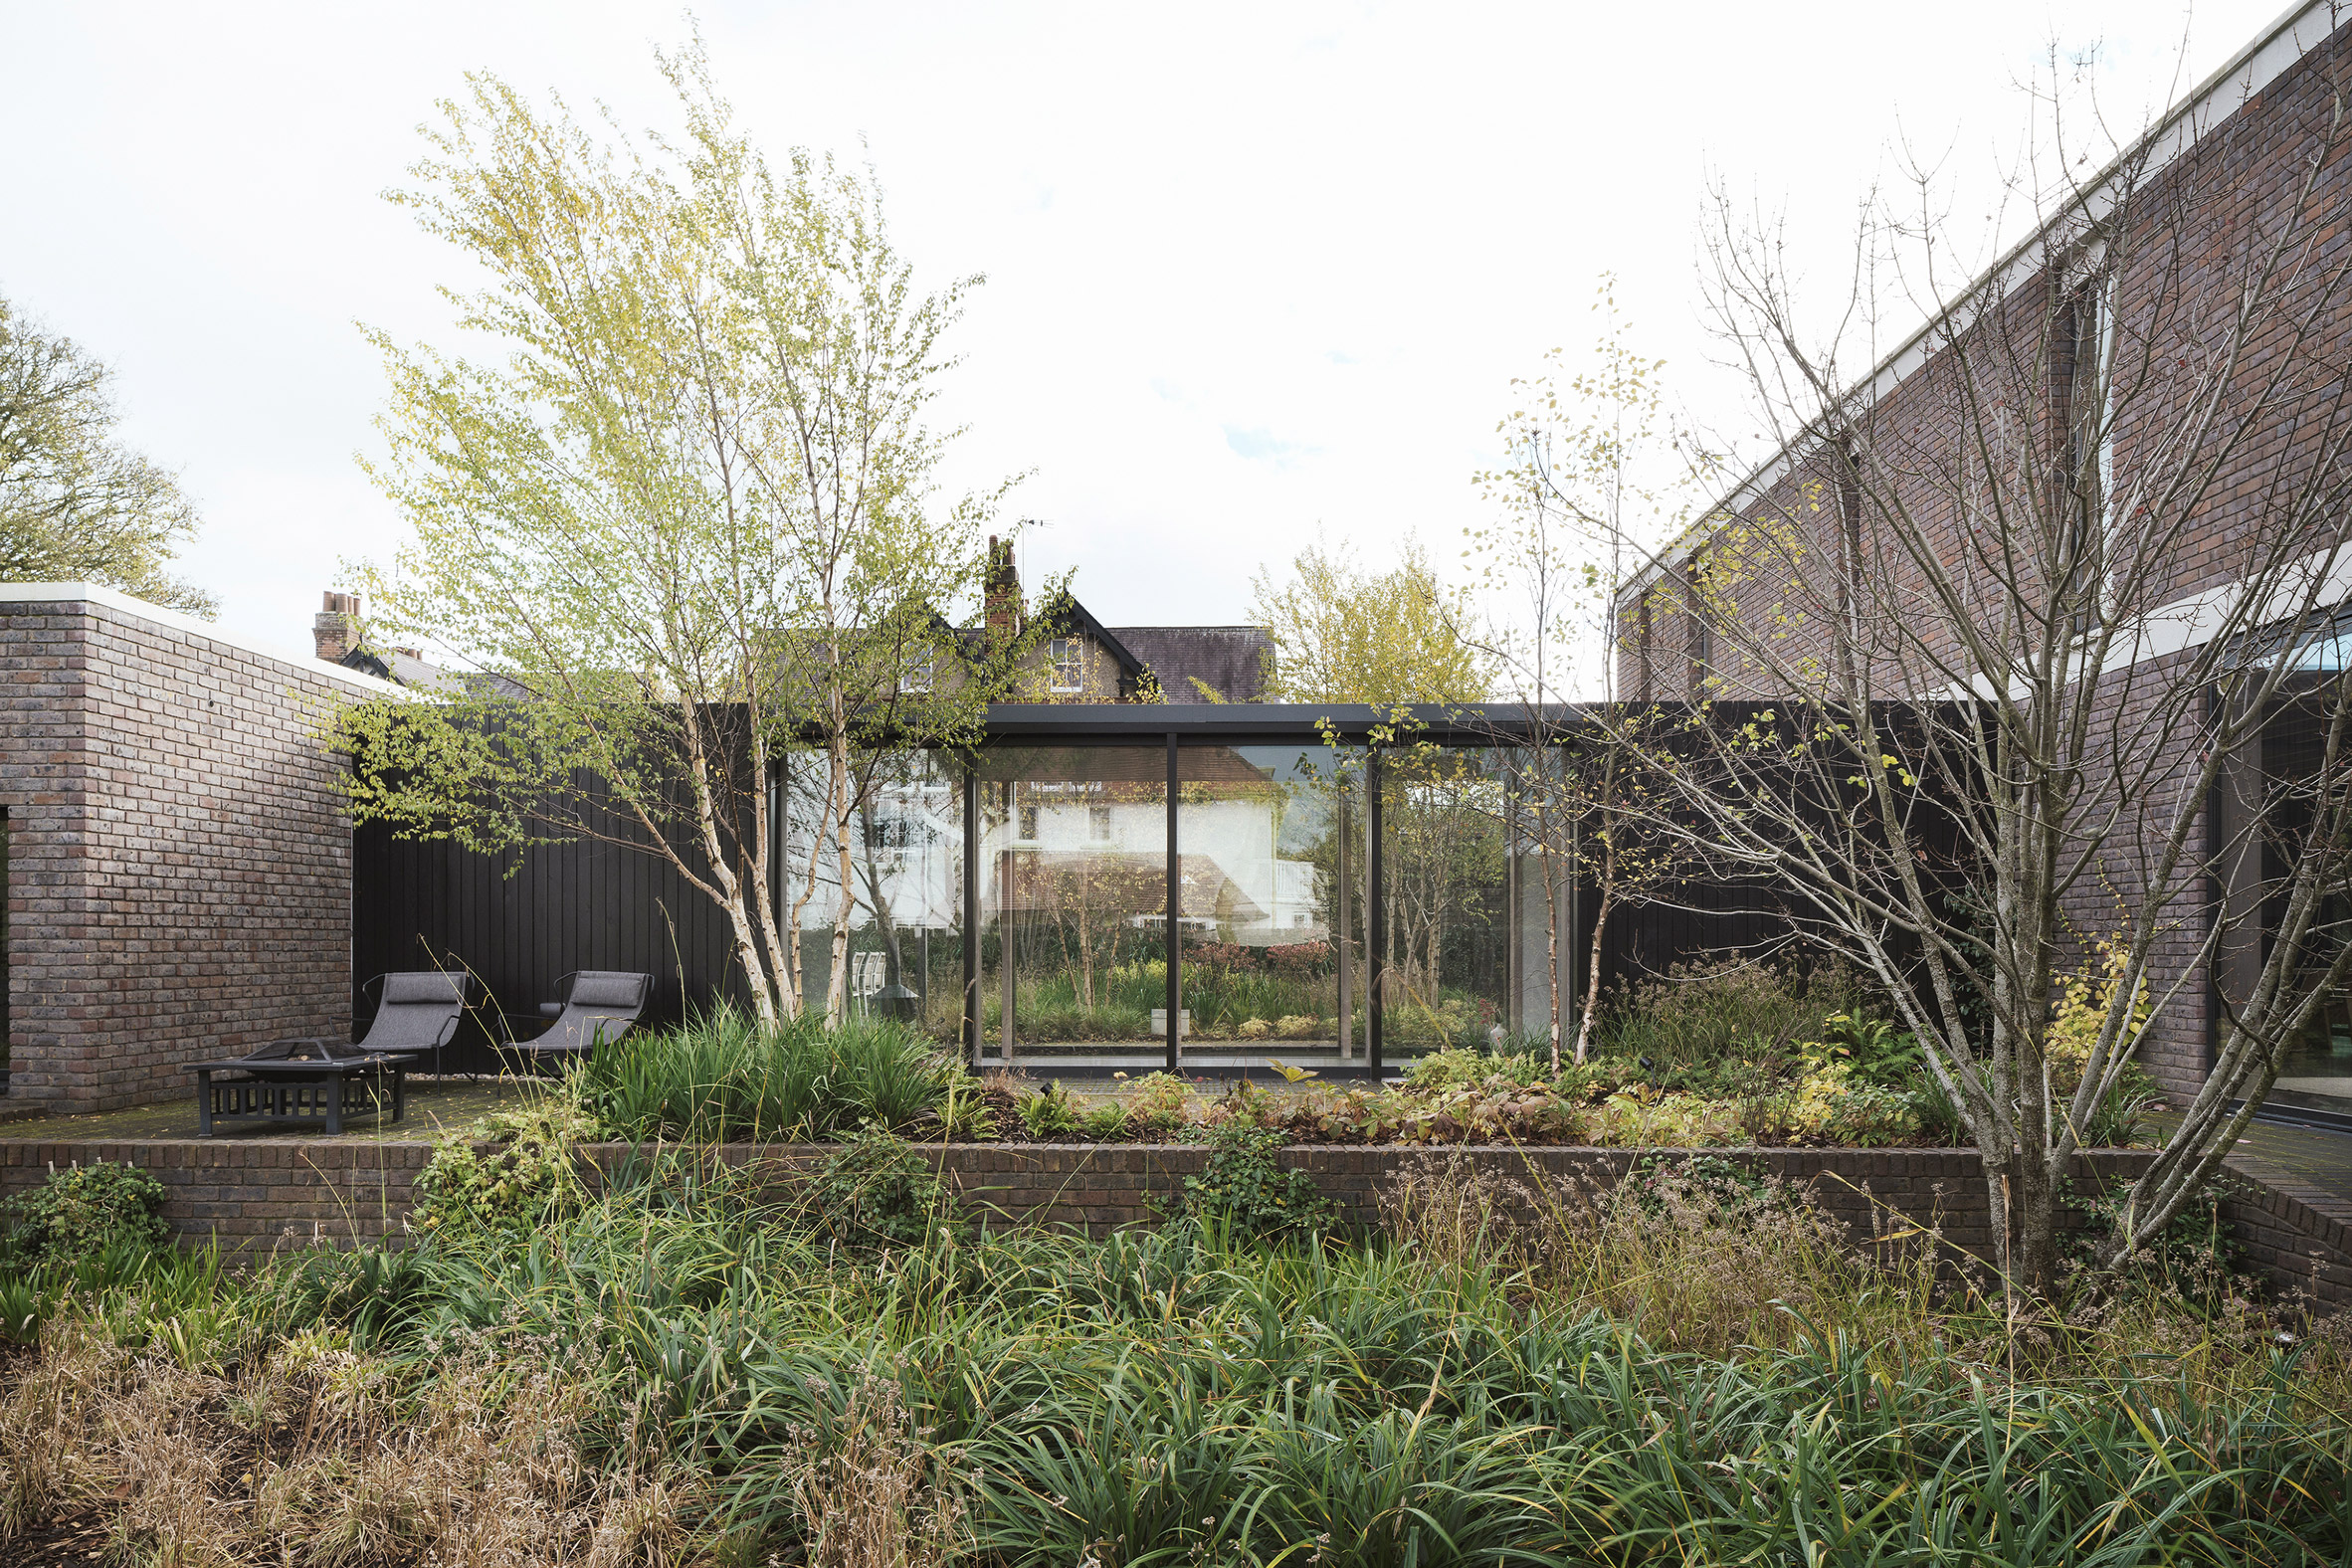 Zen garden in Derwent Valley, Derbyshire by Blee Halligan Architects